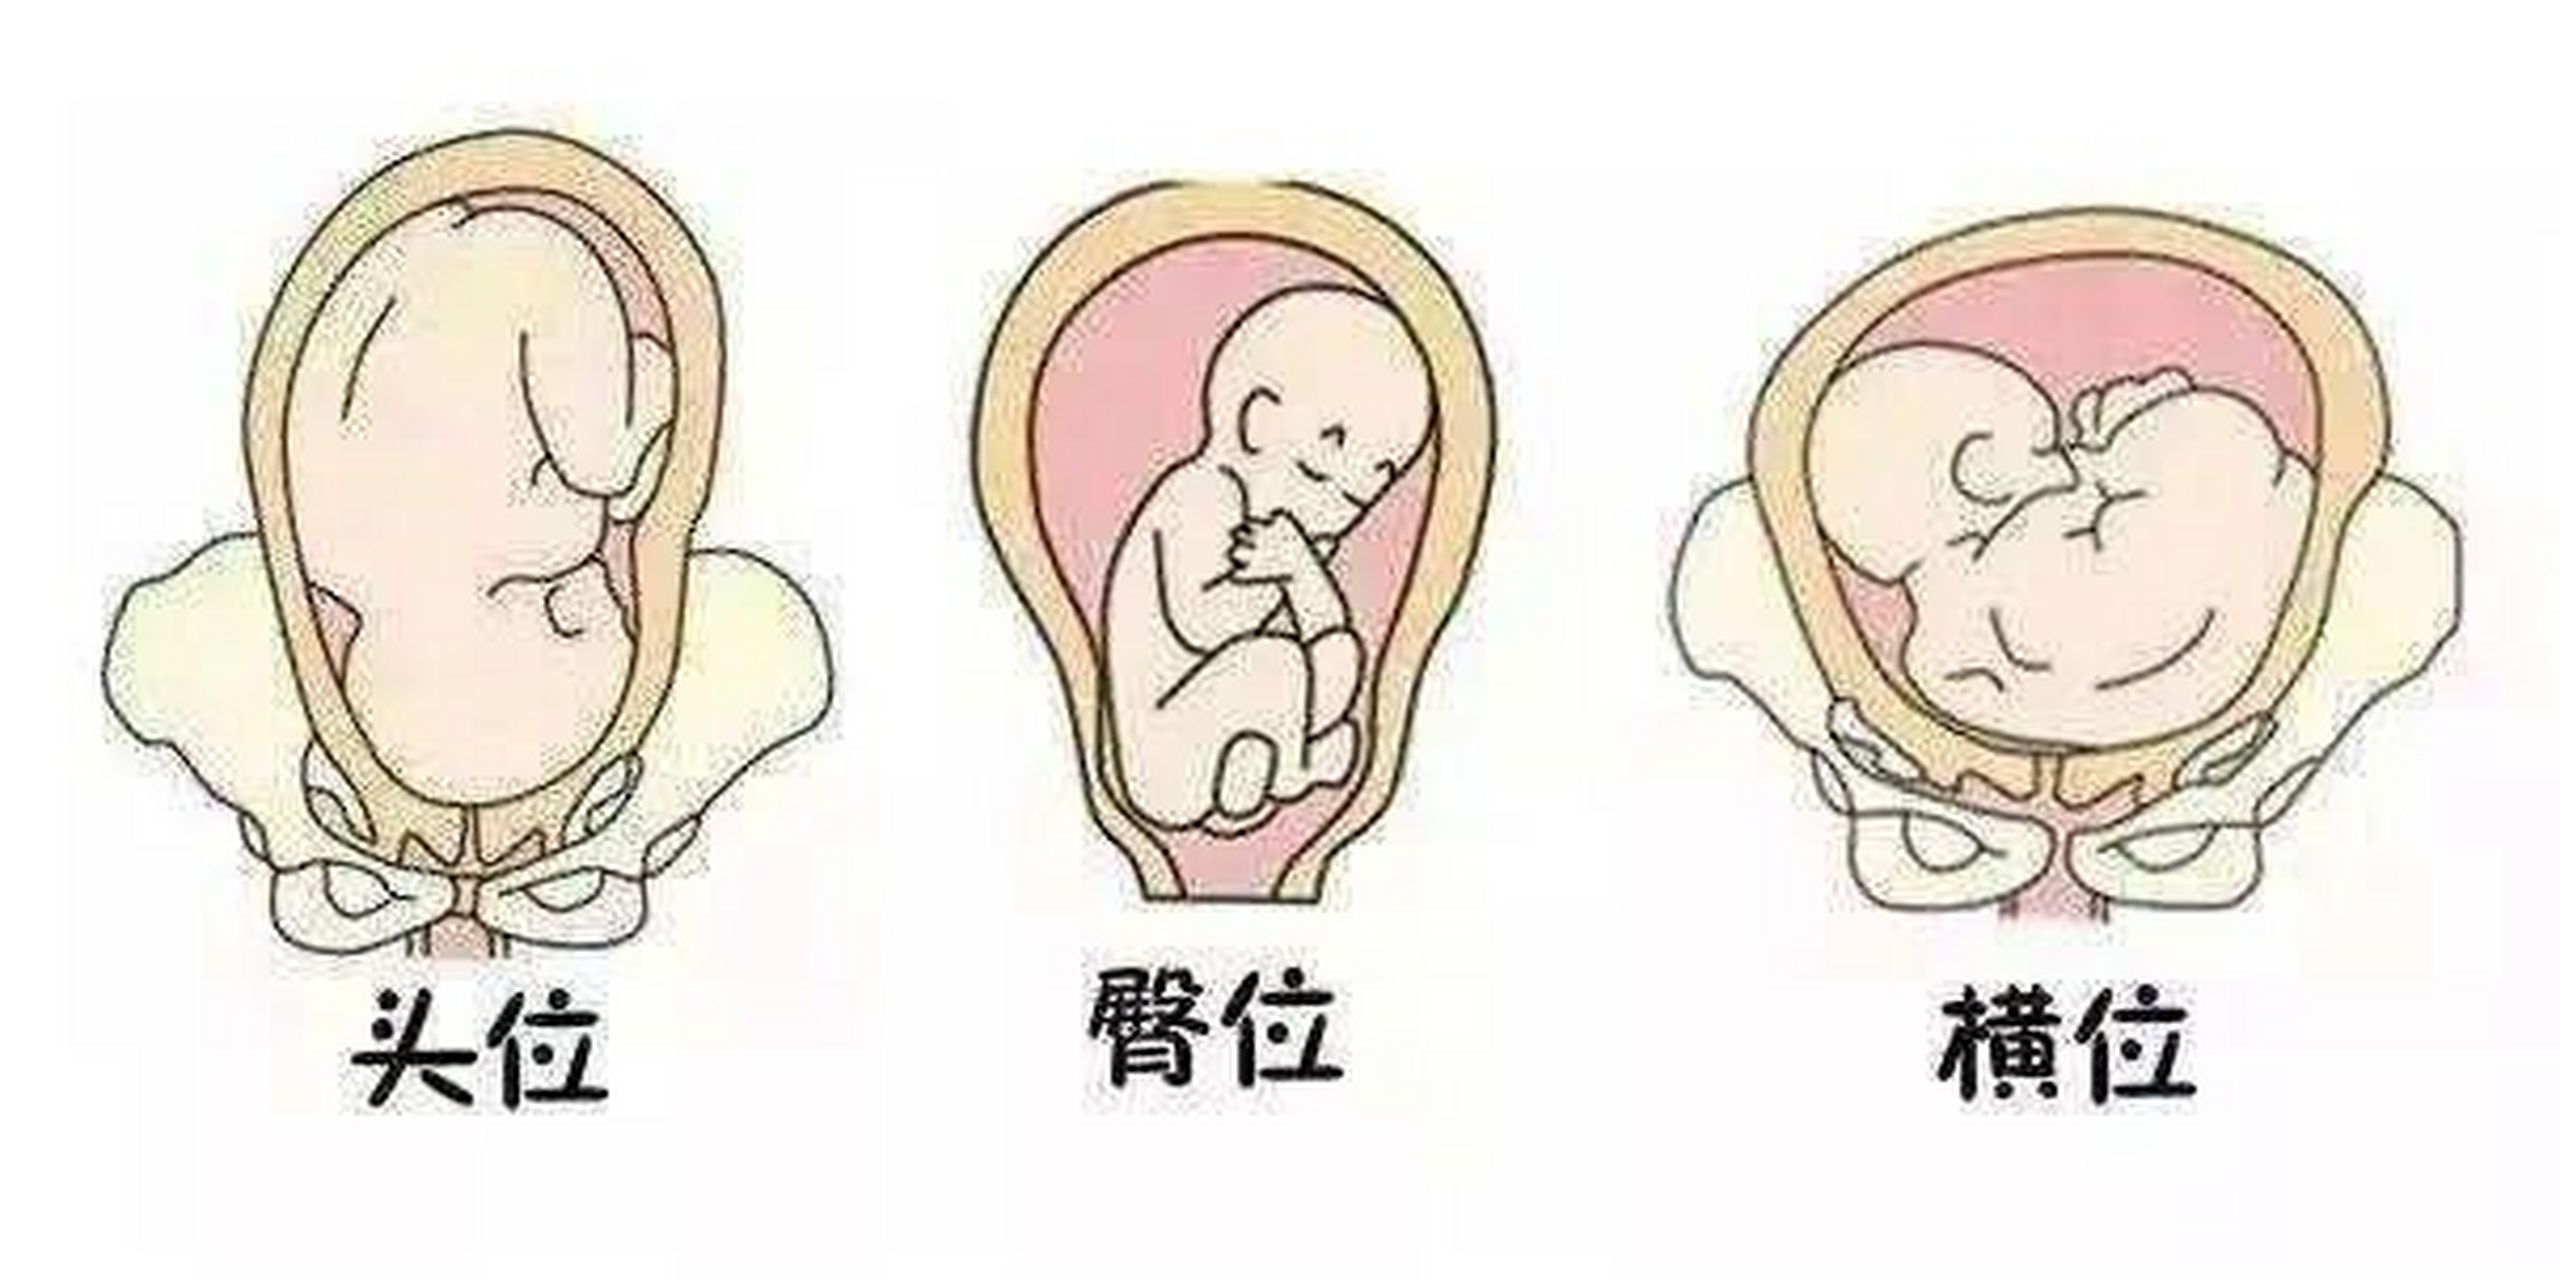 一图看懂胎方位 胎方位是指先露部的指示点与产妇骨盆的关系